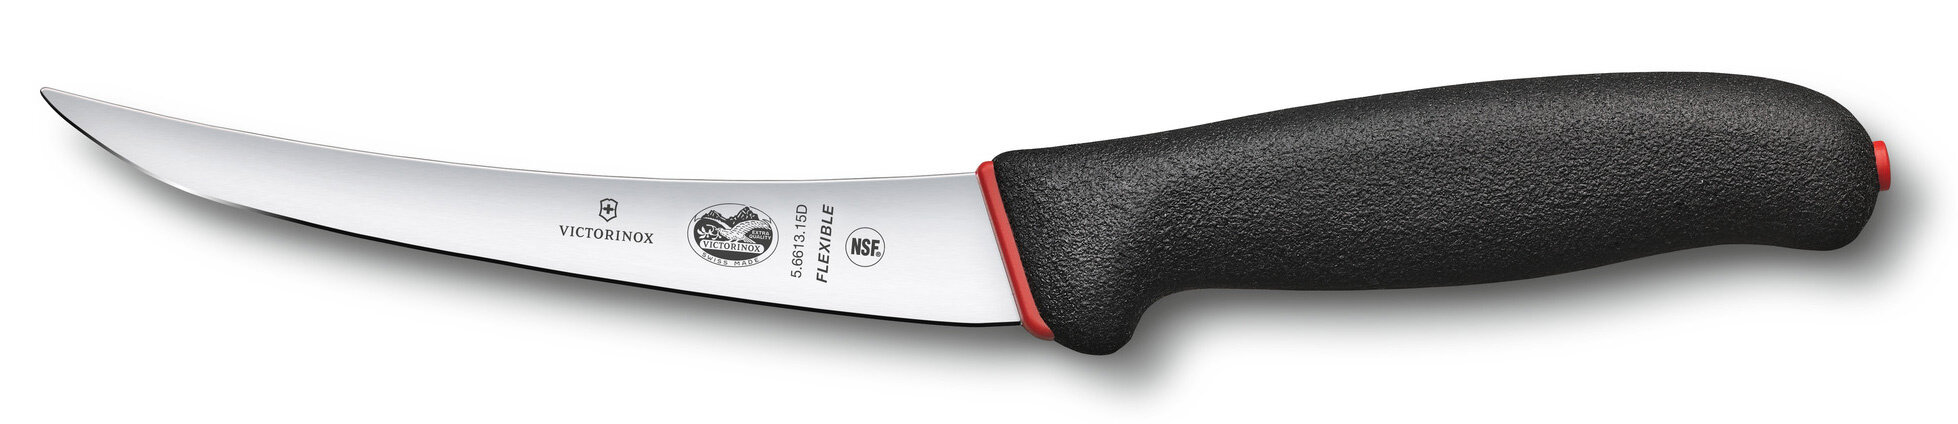 Нож кухонный Victorinox Fibrox Dual Grip, обвалочный, 150мм, заточка прямая, стальной, черный [5.661